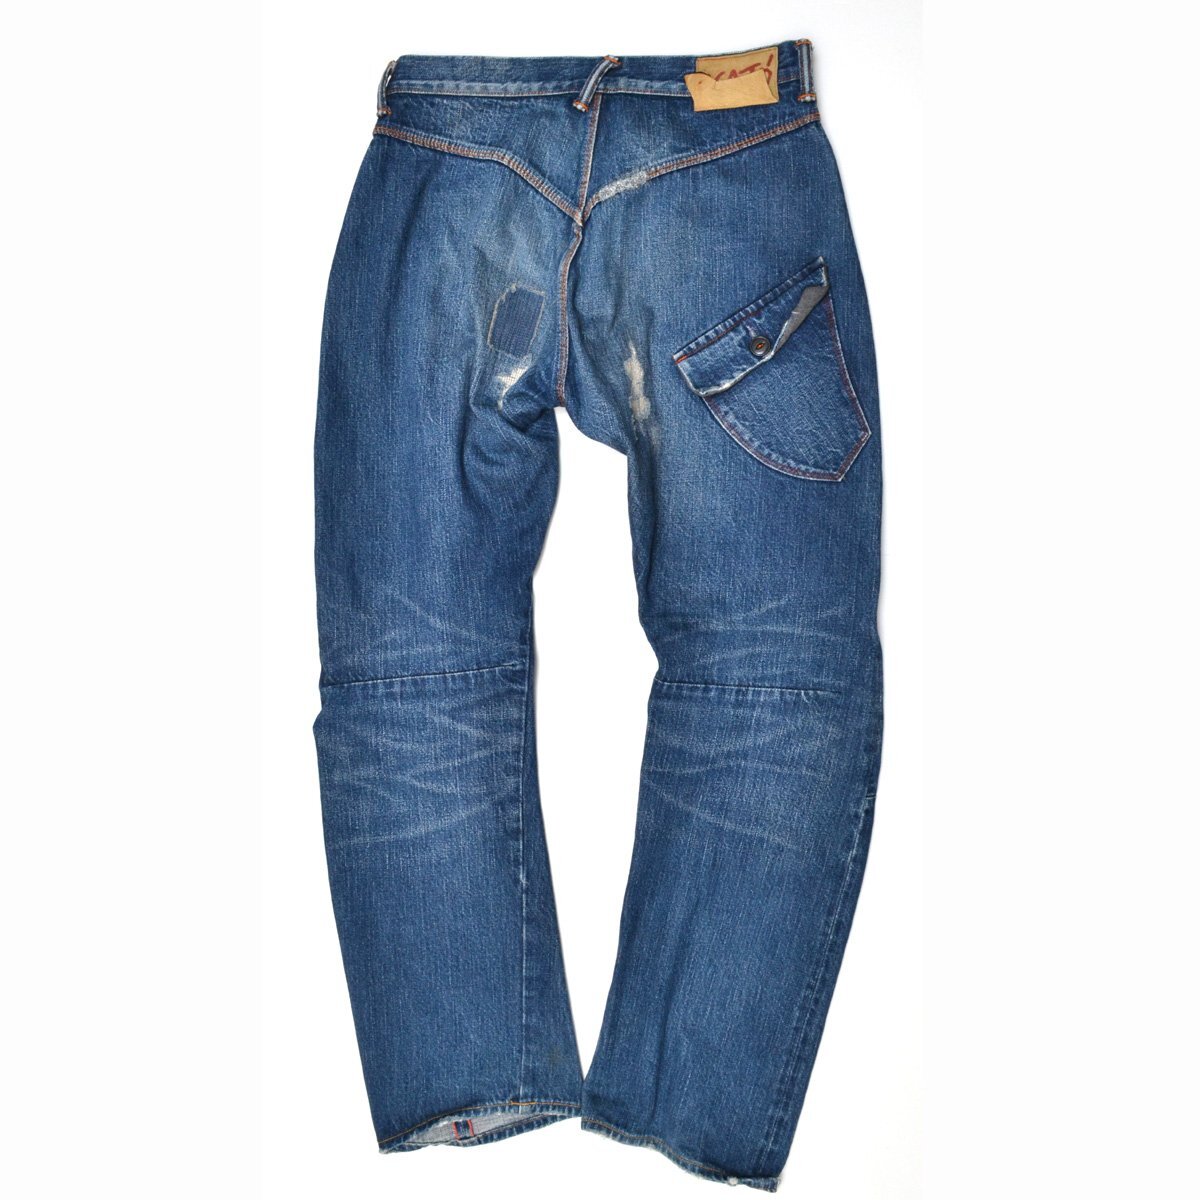 KATO\' Kato повреждение обработка Denim брюки джинсы W31 мужской M785920